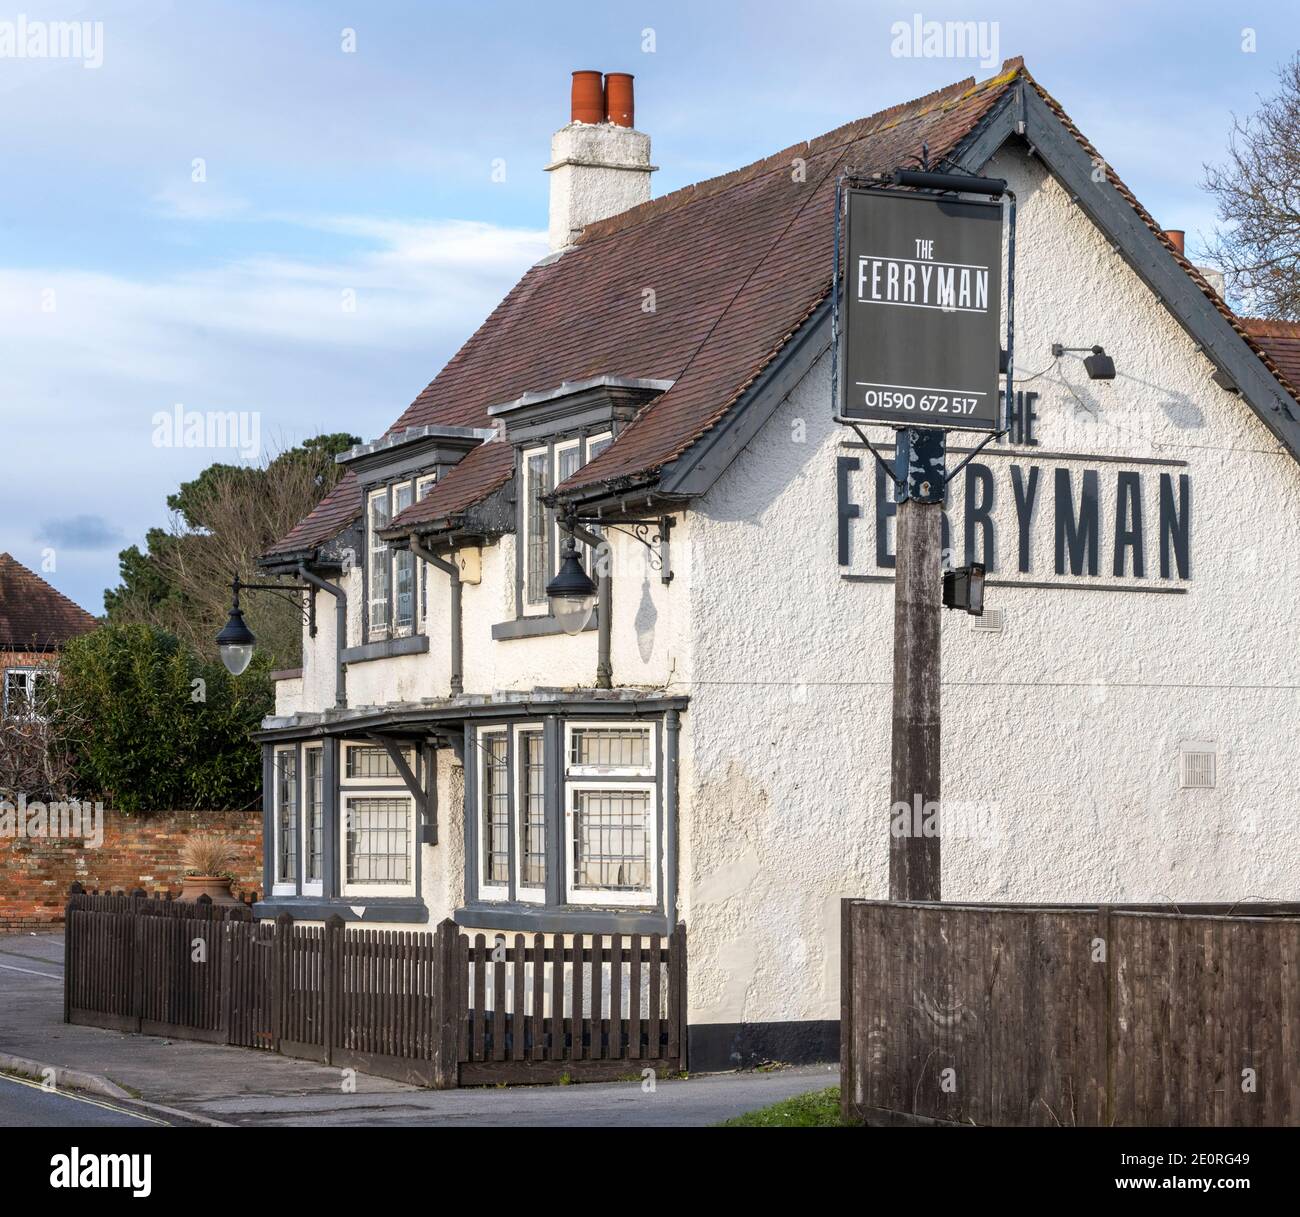 The Ferryman - public house - Lymington, New Forest, Hampshire, England, UK Stock Photo